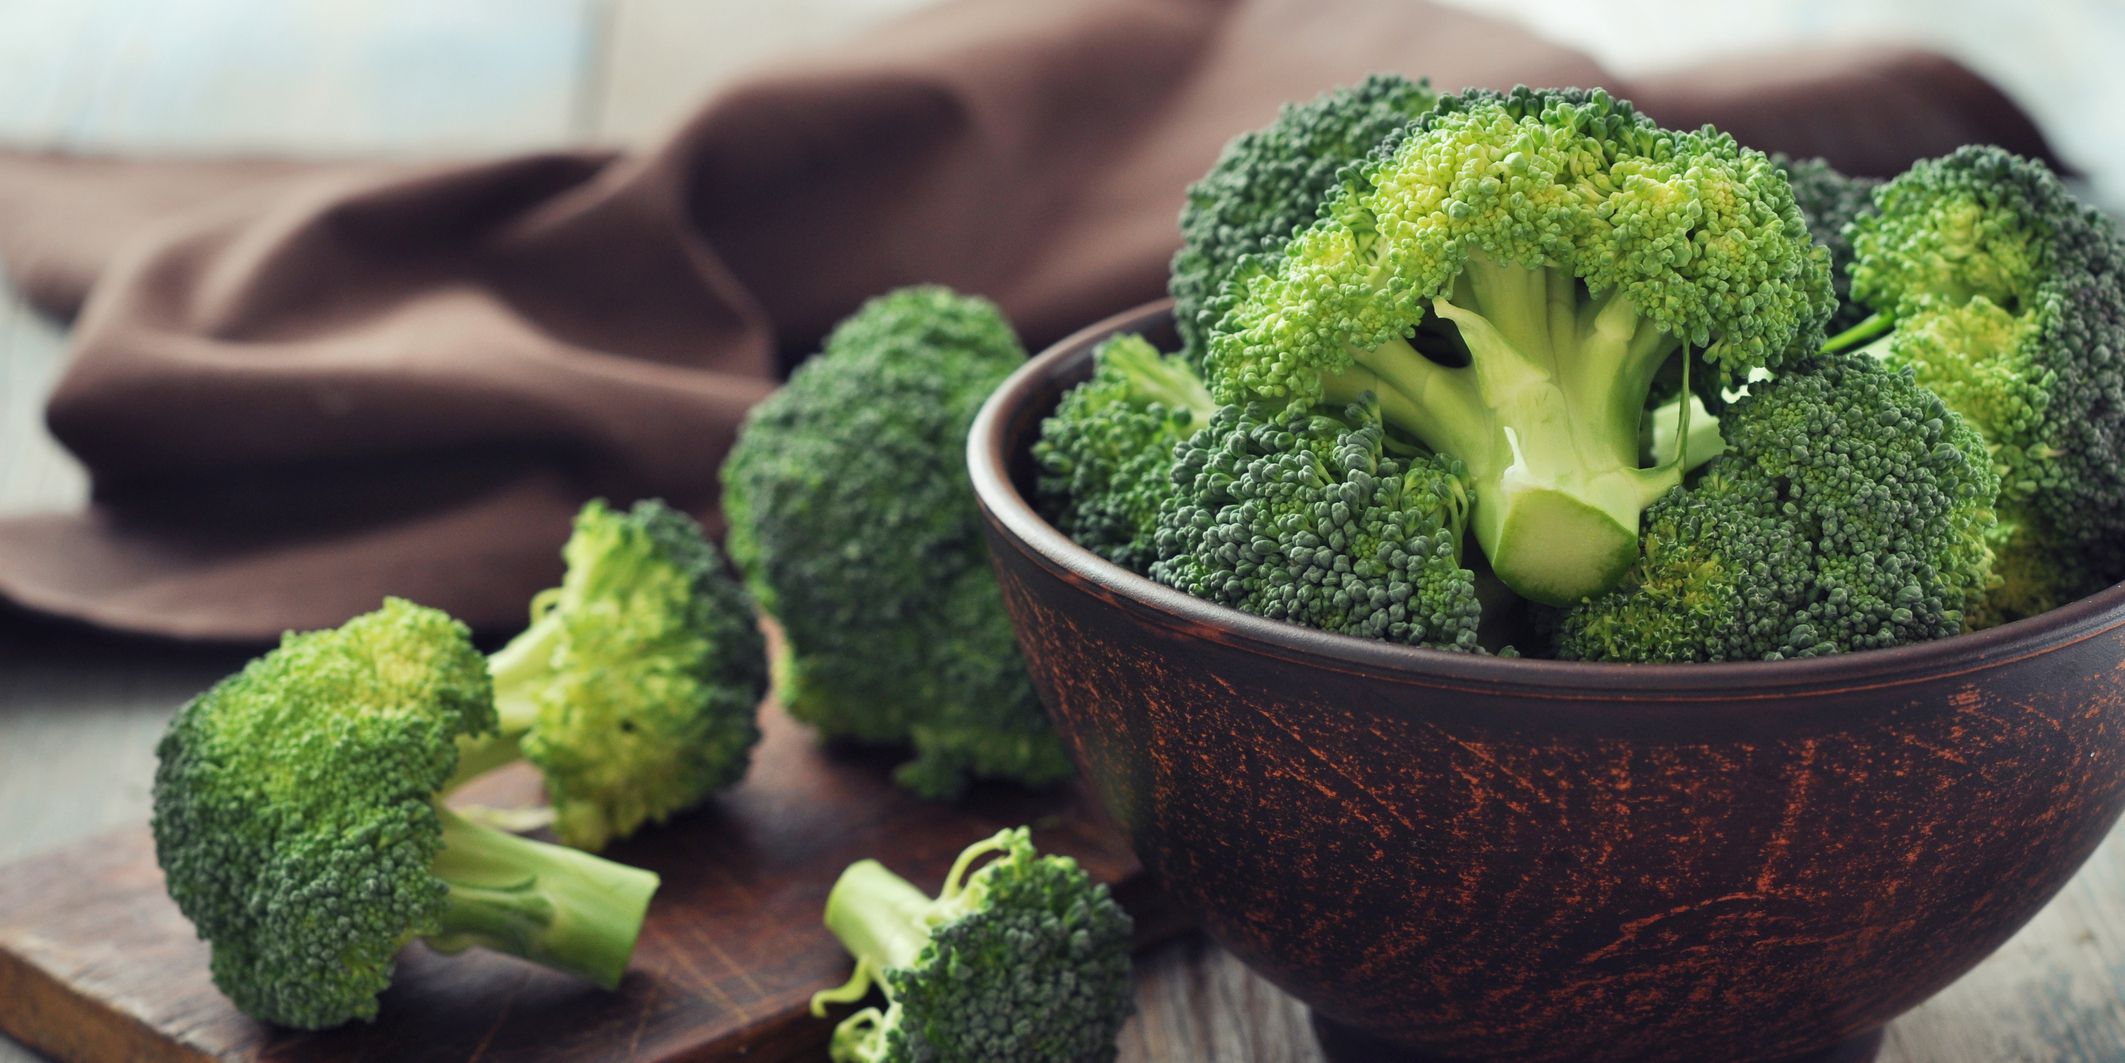 raw-broccoli-1521576184.jpg